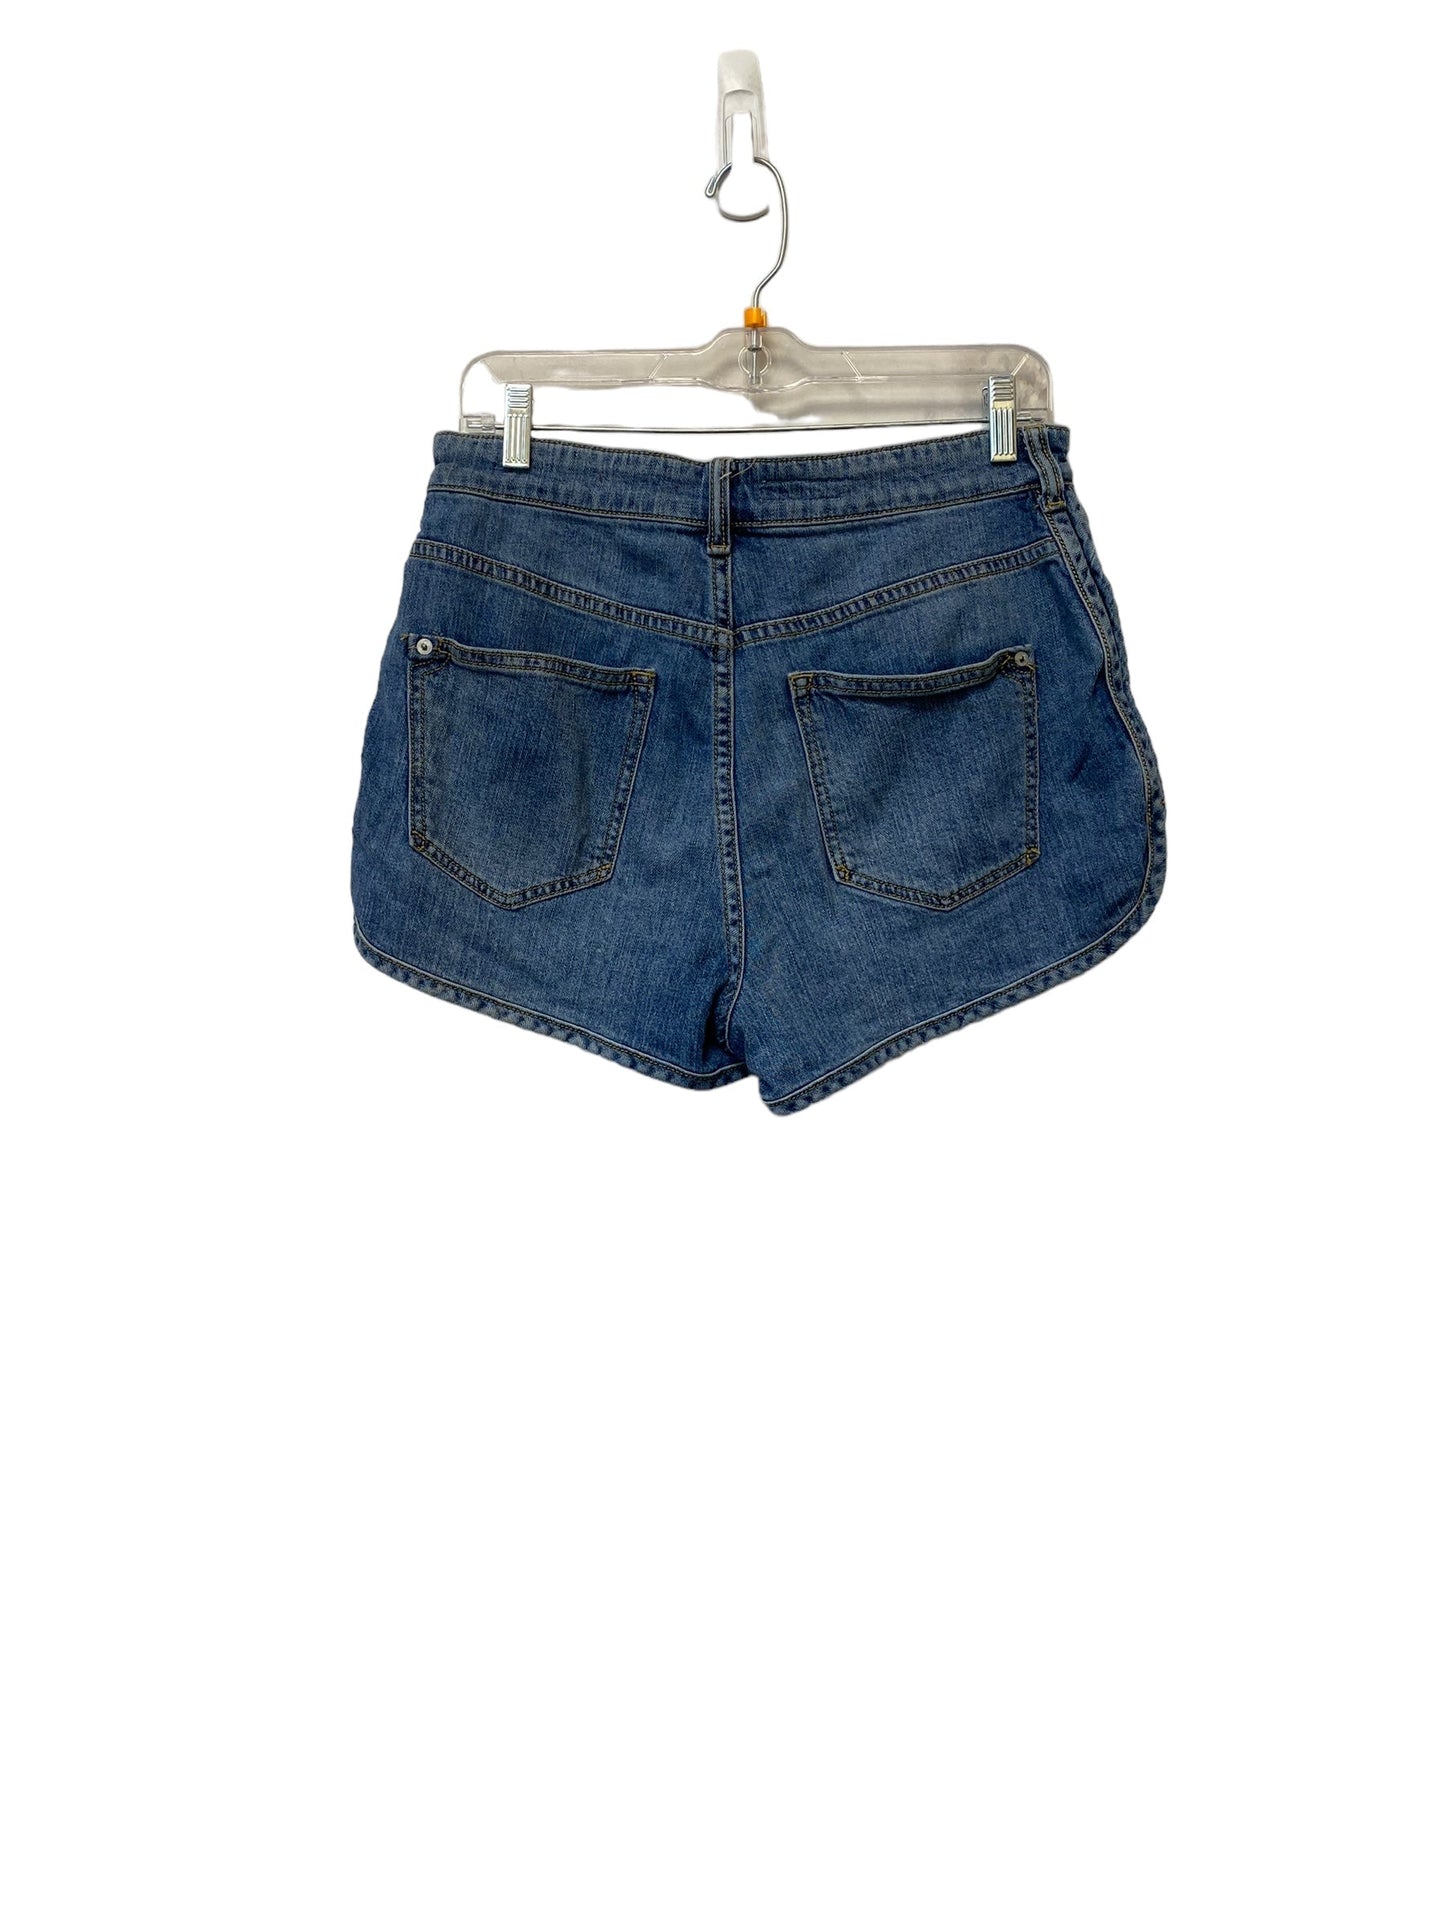 Blue Shorts Pilcro, Size 28